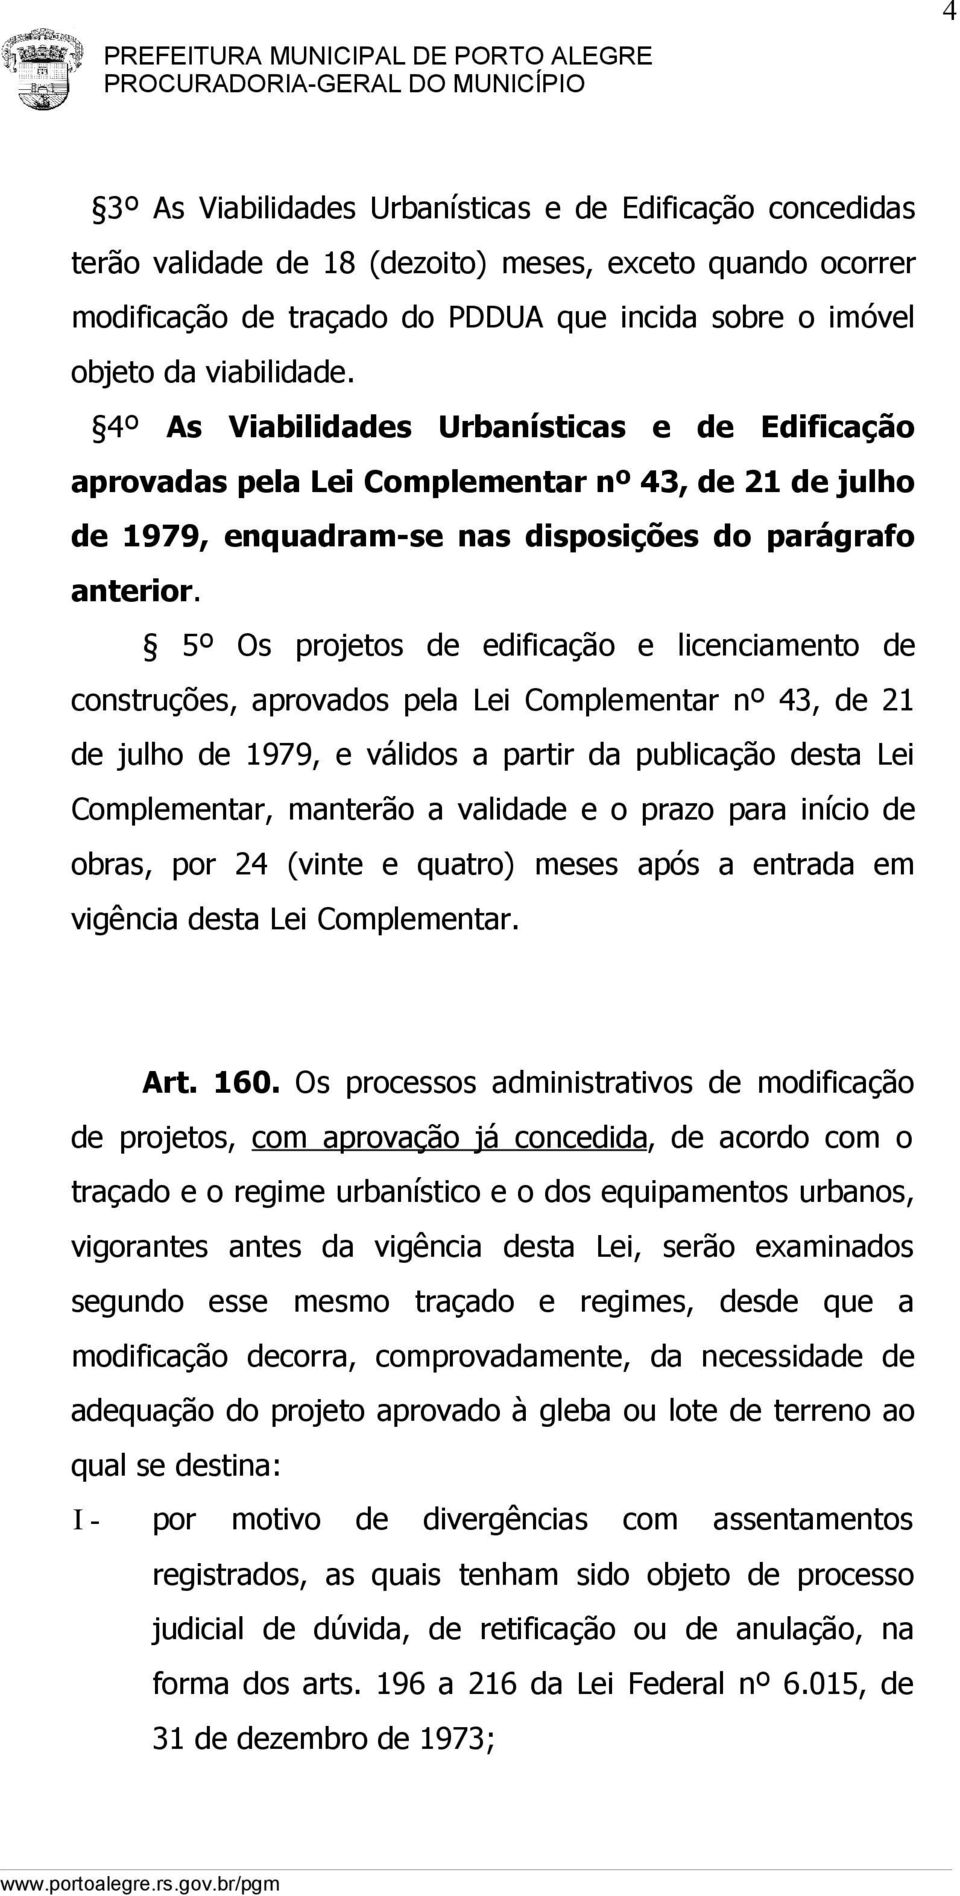 5º Os projetos de edificação e licenciamento de construções, aprovados pela Lei Complementar nº 43, de 21 de julho de 1979, e válidos a partir da publicação desta Lei Complementar, manterão a